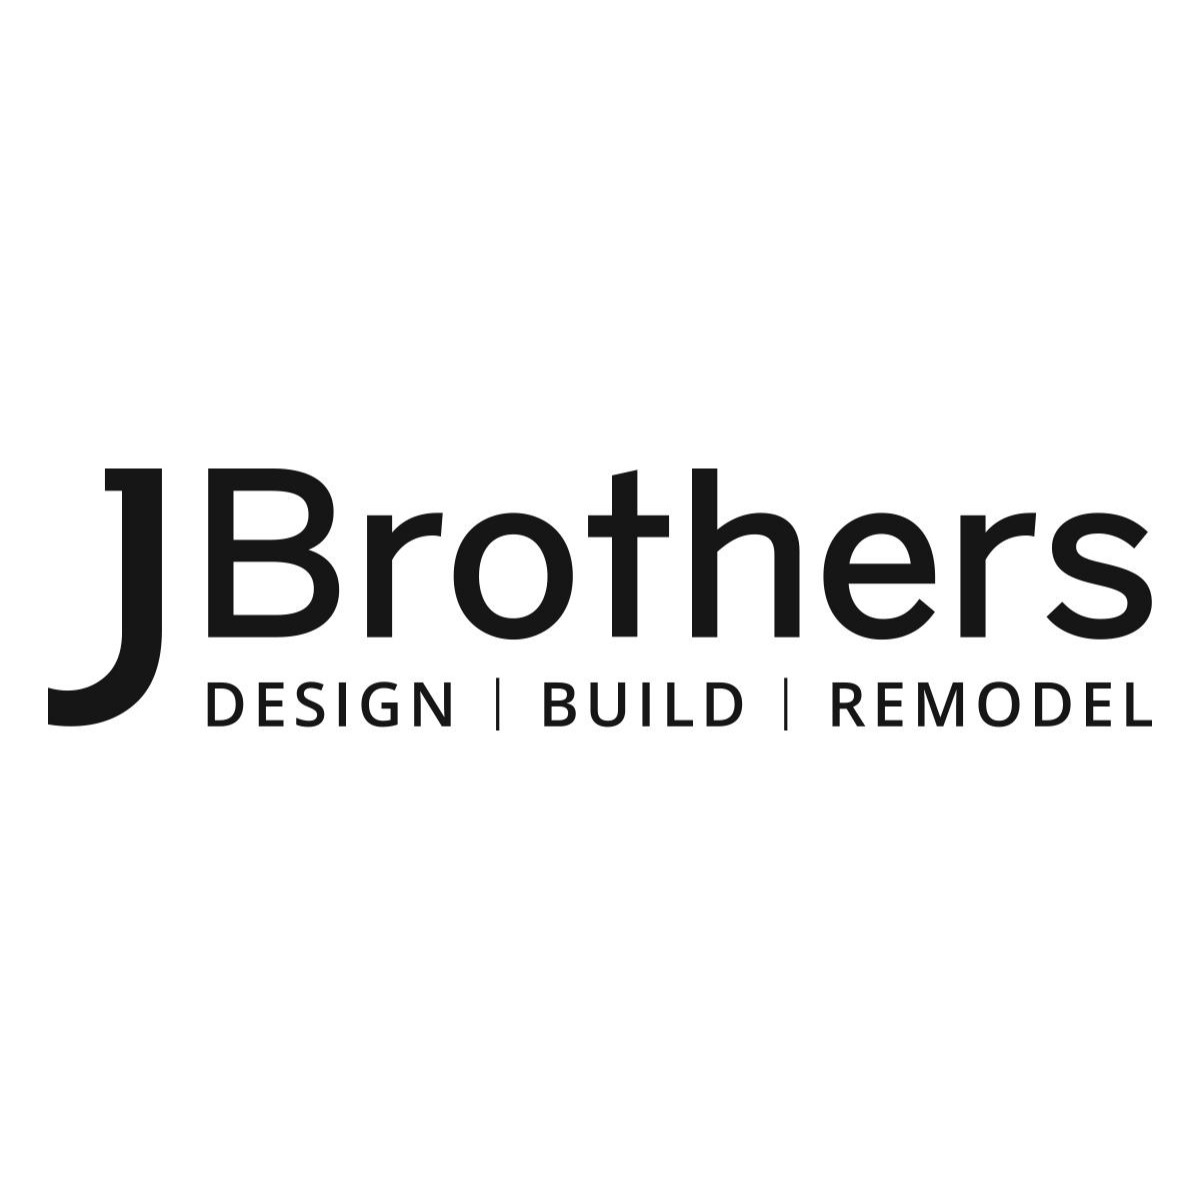 J Brothers Design - Build - Remodel, Inc. Logo